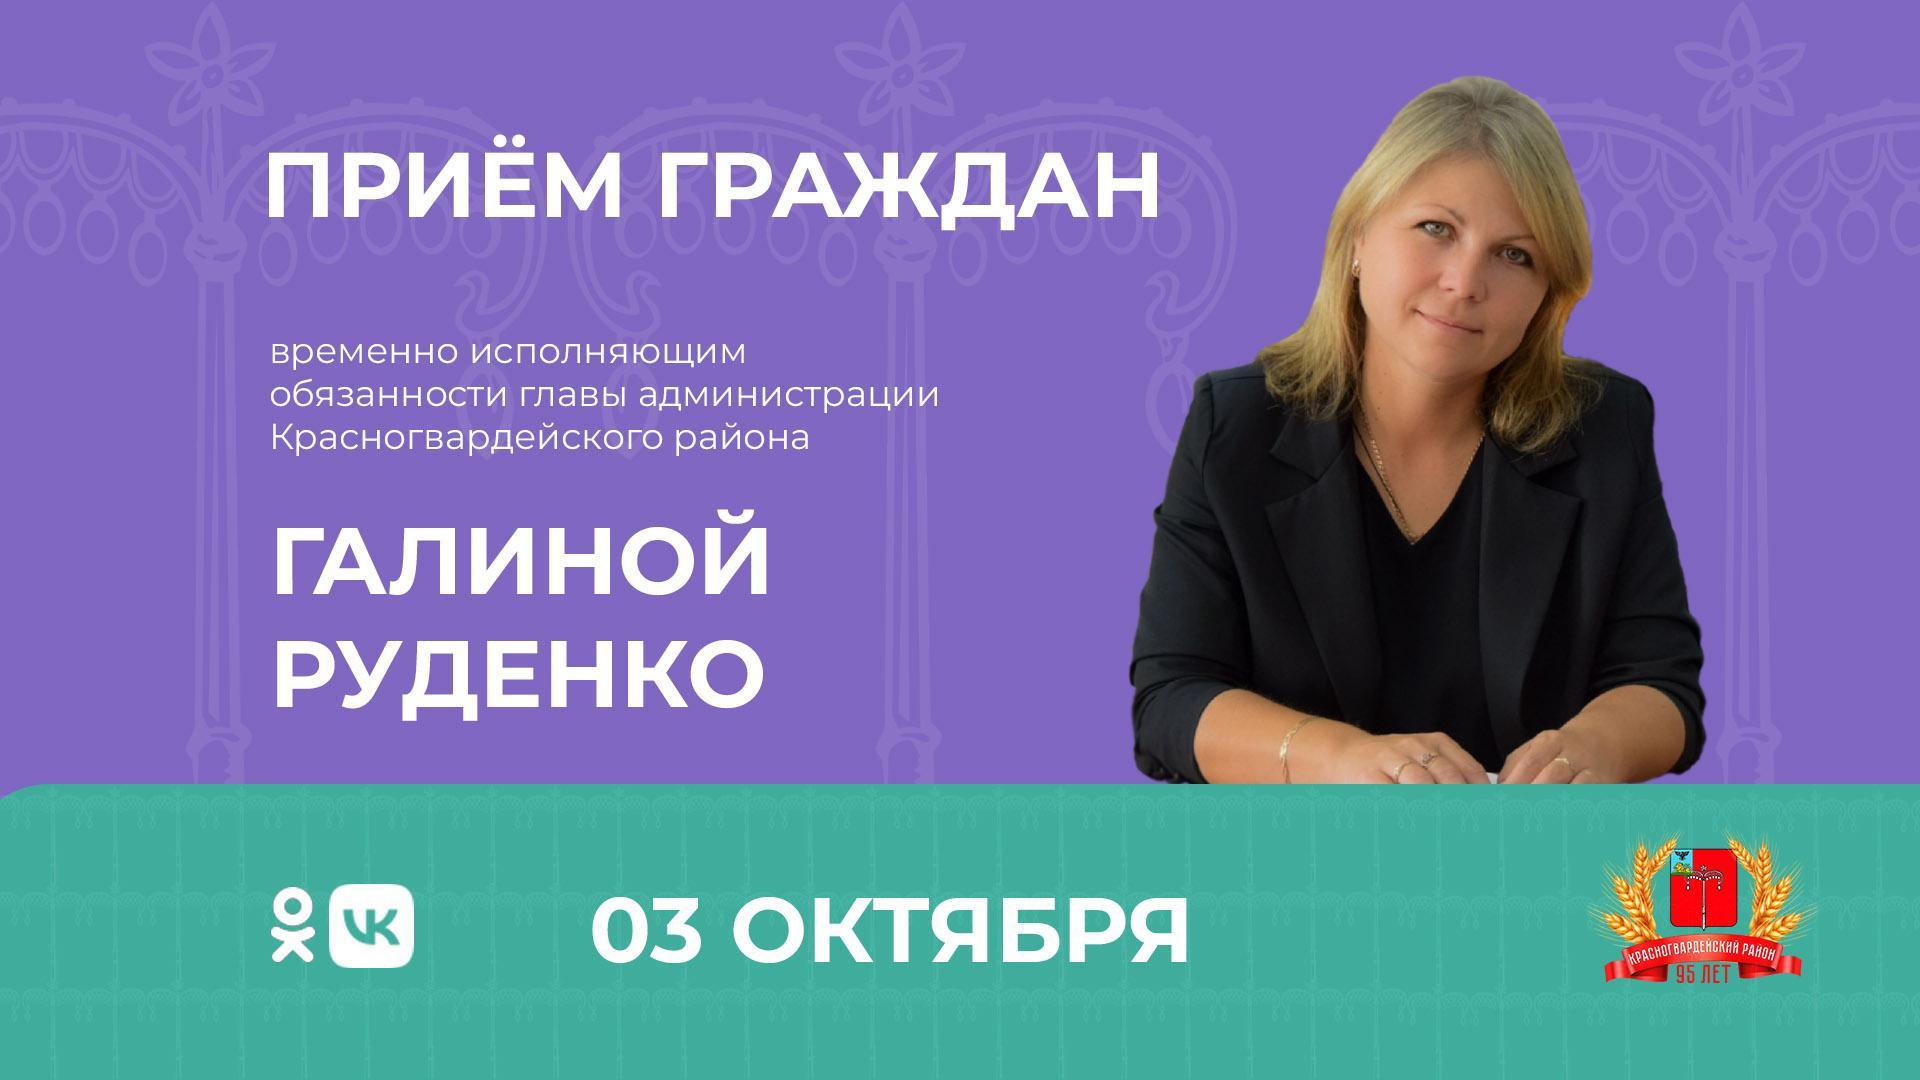 3 октября состоится личный приём граждан временно исполняющим обязанности главы администрации Красногвардейского района Галиной Руденко.